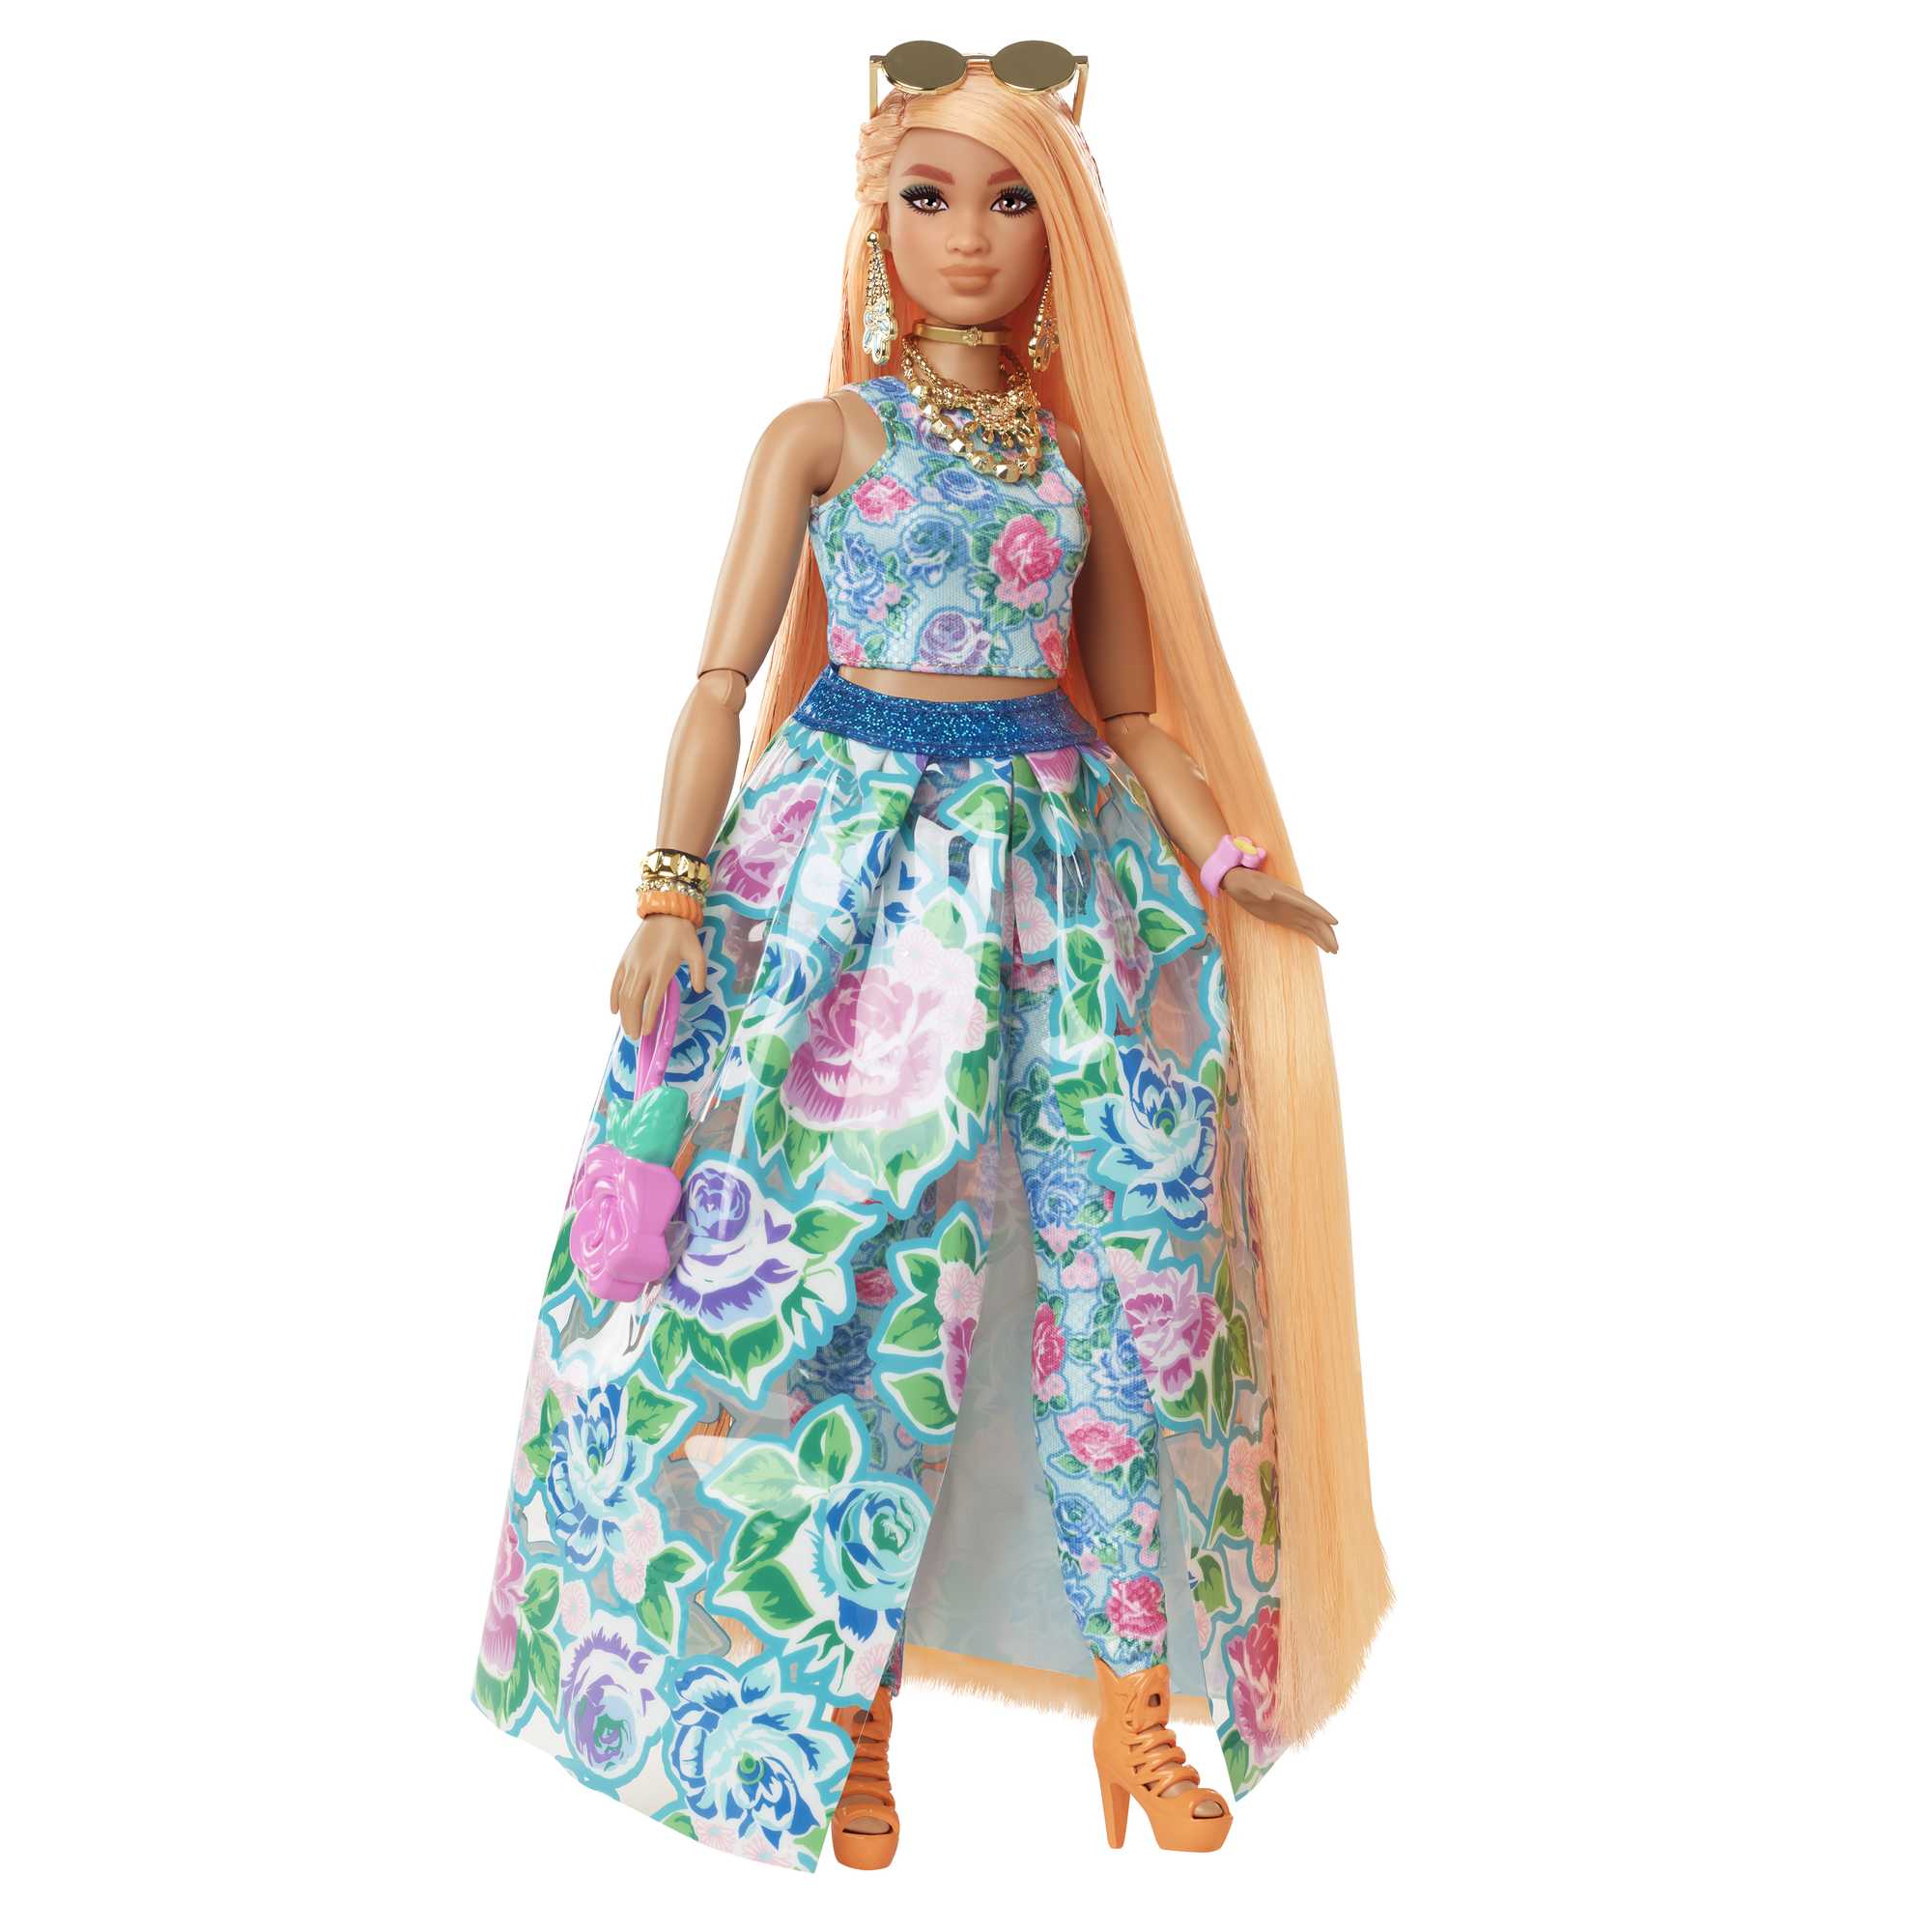 Modèle robe chic,robe et accessoires barbie princesse diana,au